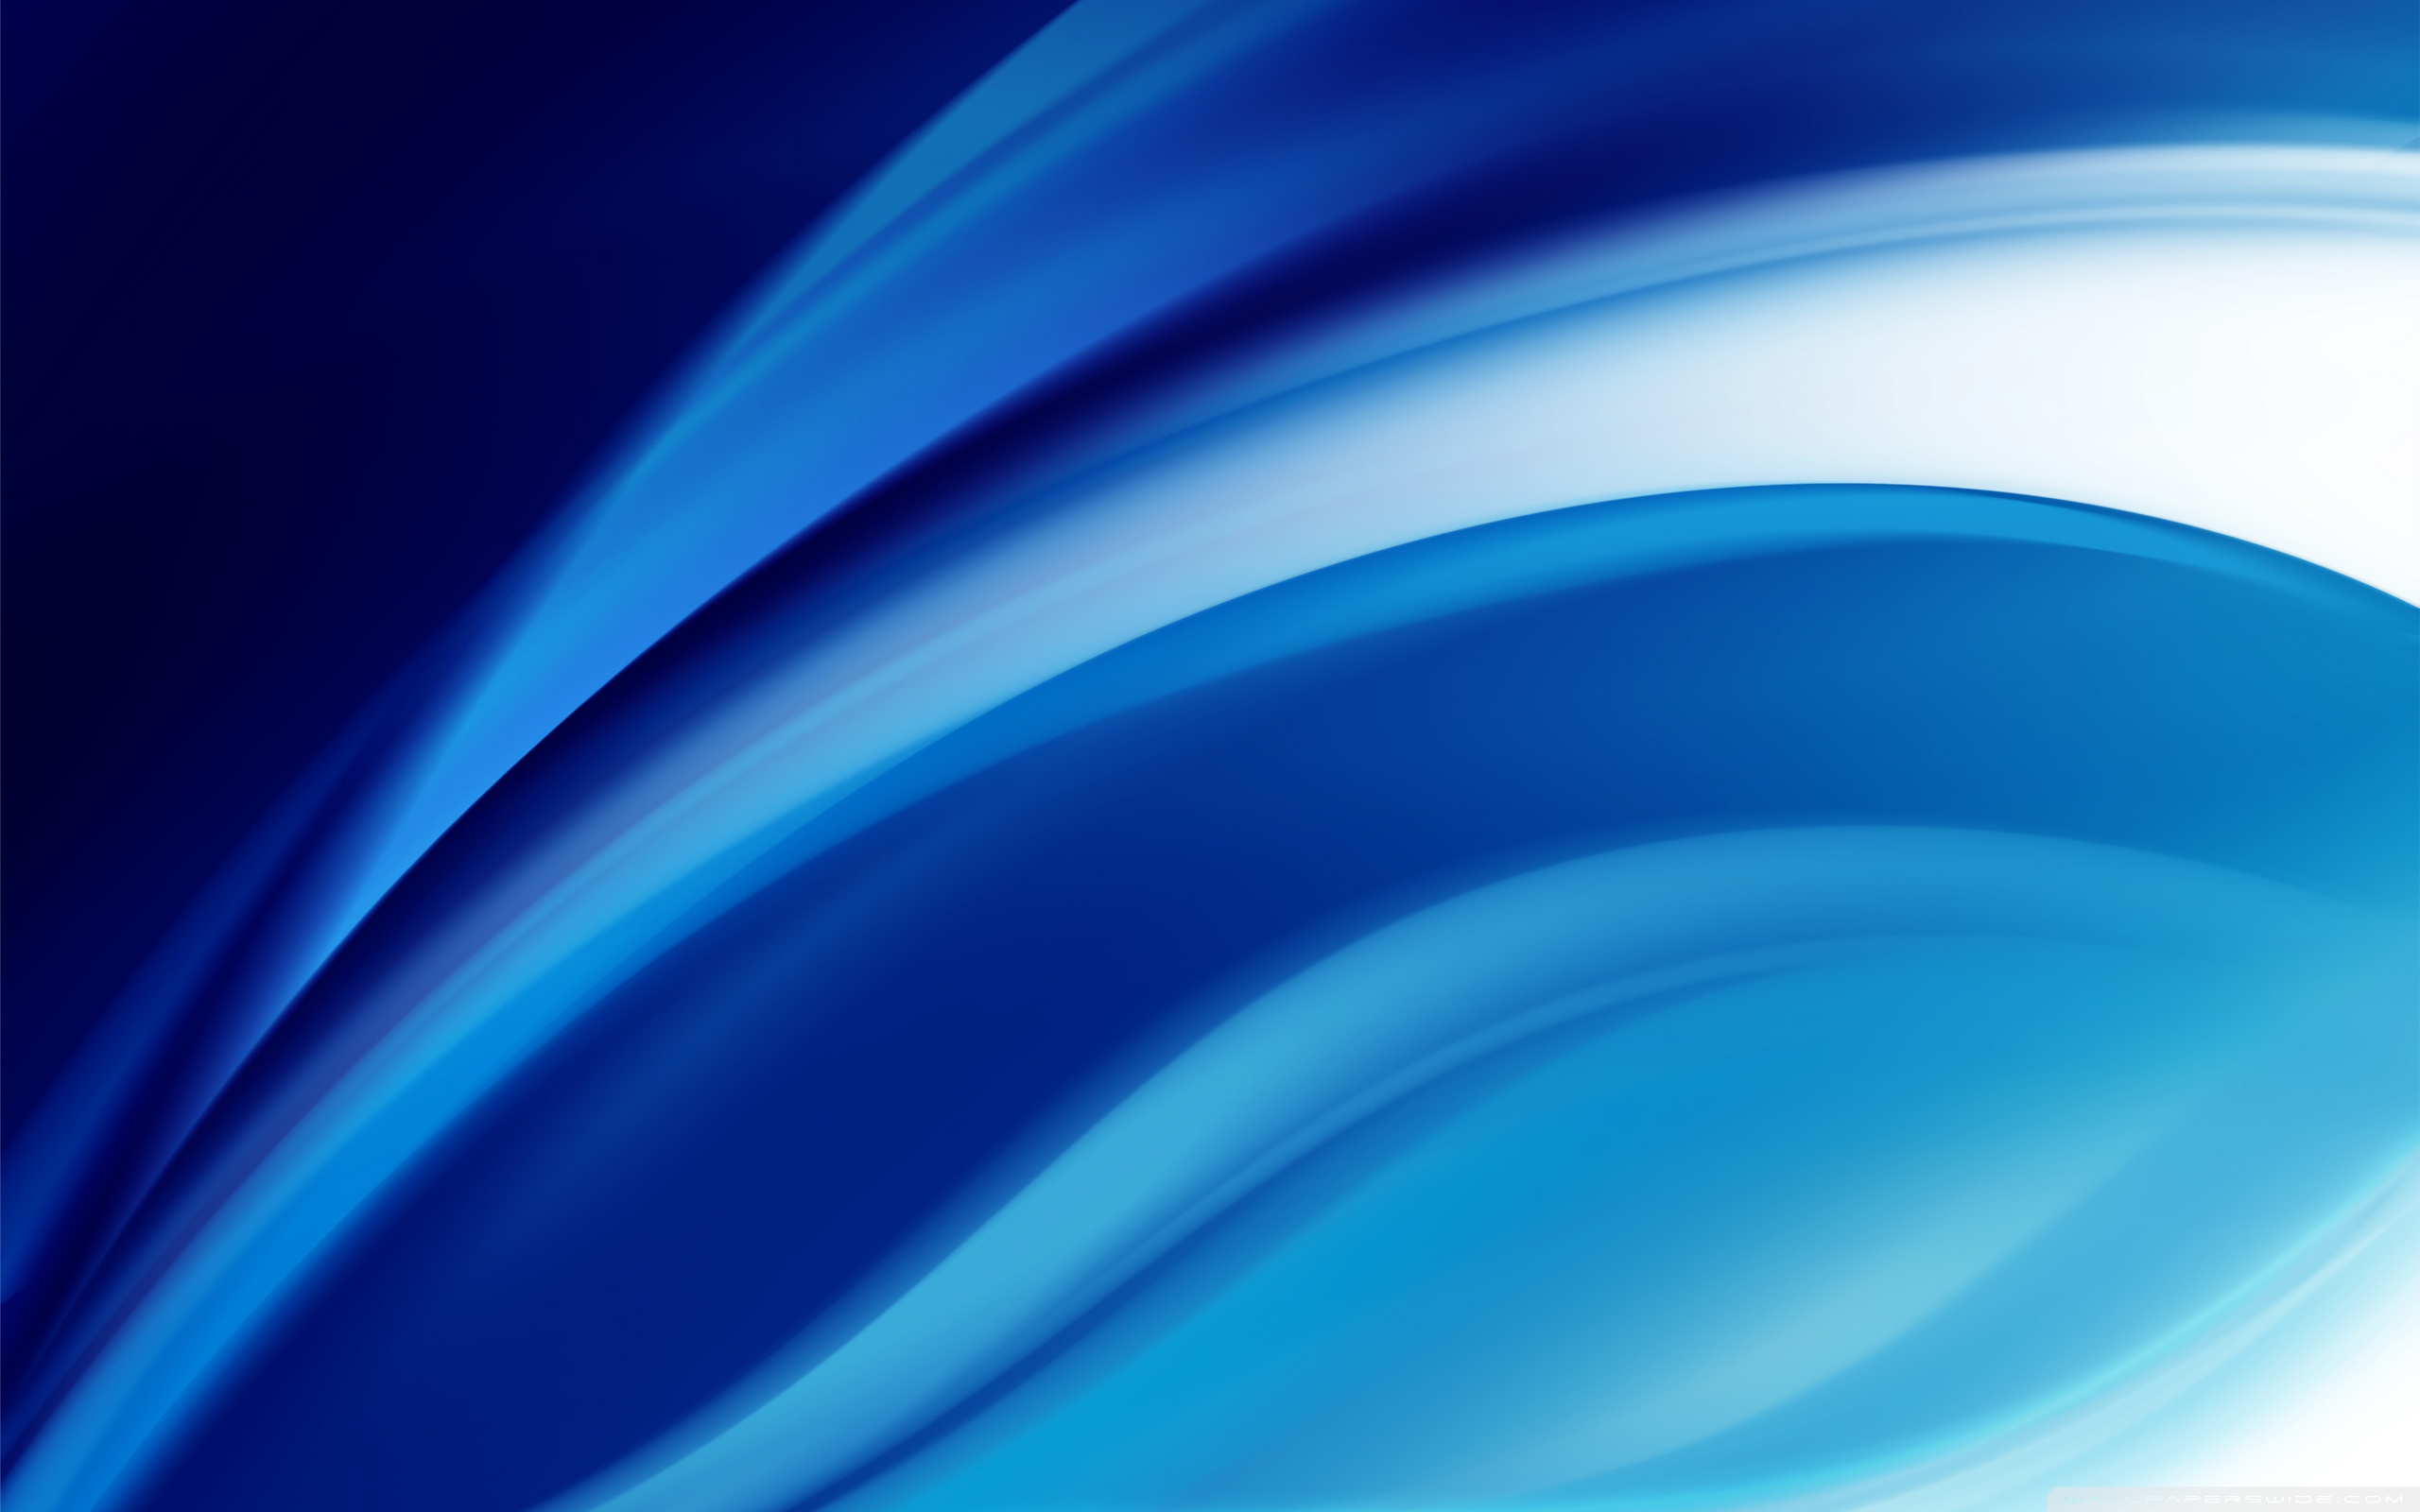 Blue Background Design Ultra Hd Desktop Background Wallpaper For 4k Uhd Tv Tablet Smartphone